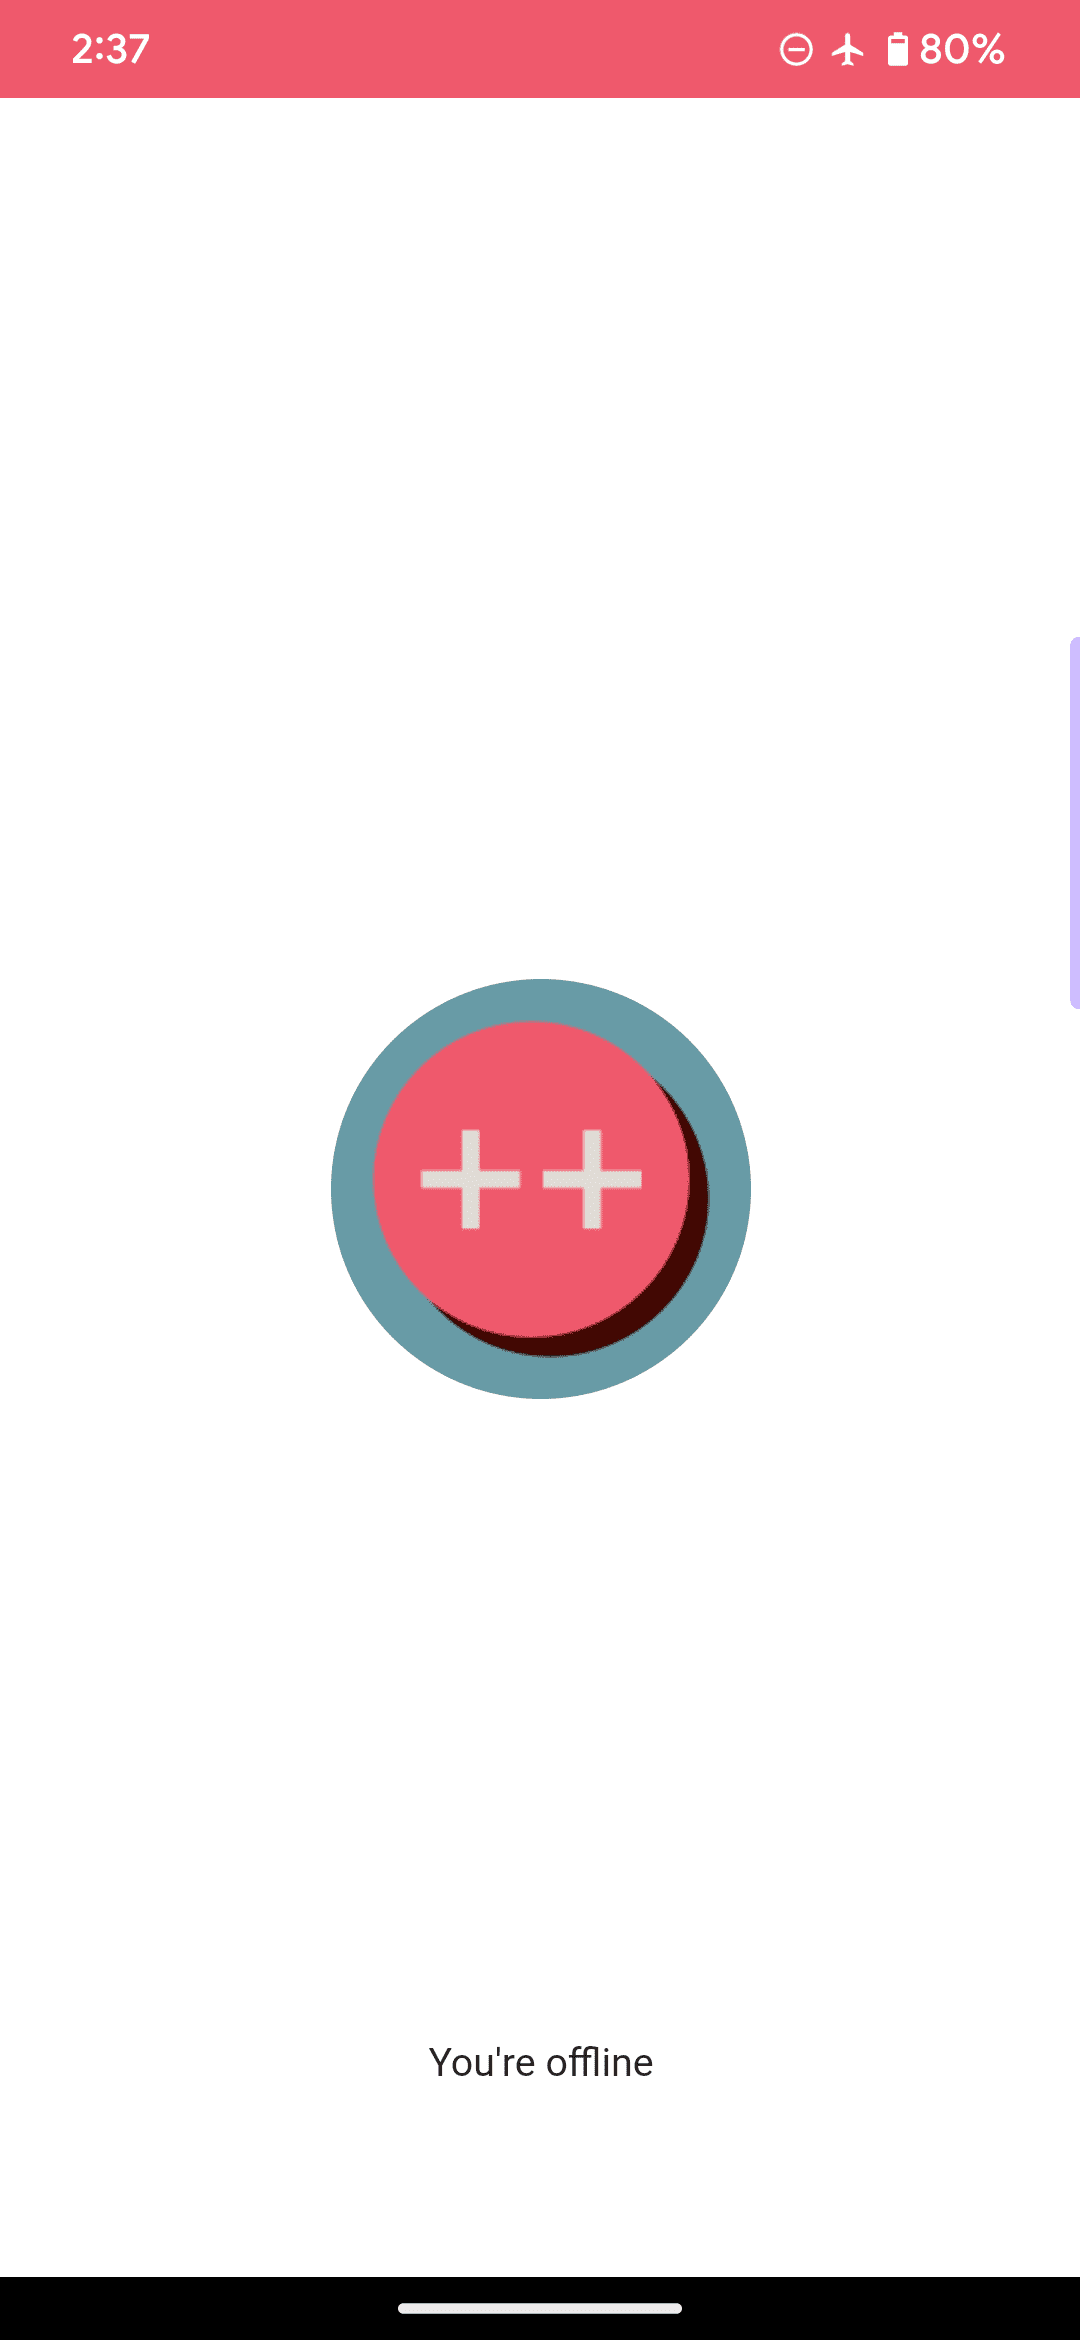 サンプルのウェブアプリのデフォルトのオフライン ページ。ピンクの円と 2 つのプラス記号でロゴに「現在オフラインです」というメッセージが表示されています。